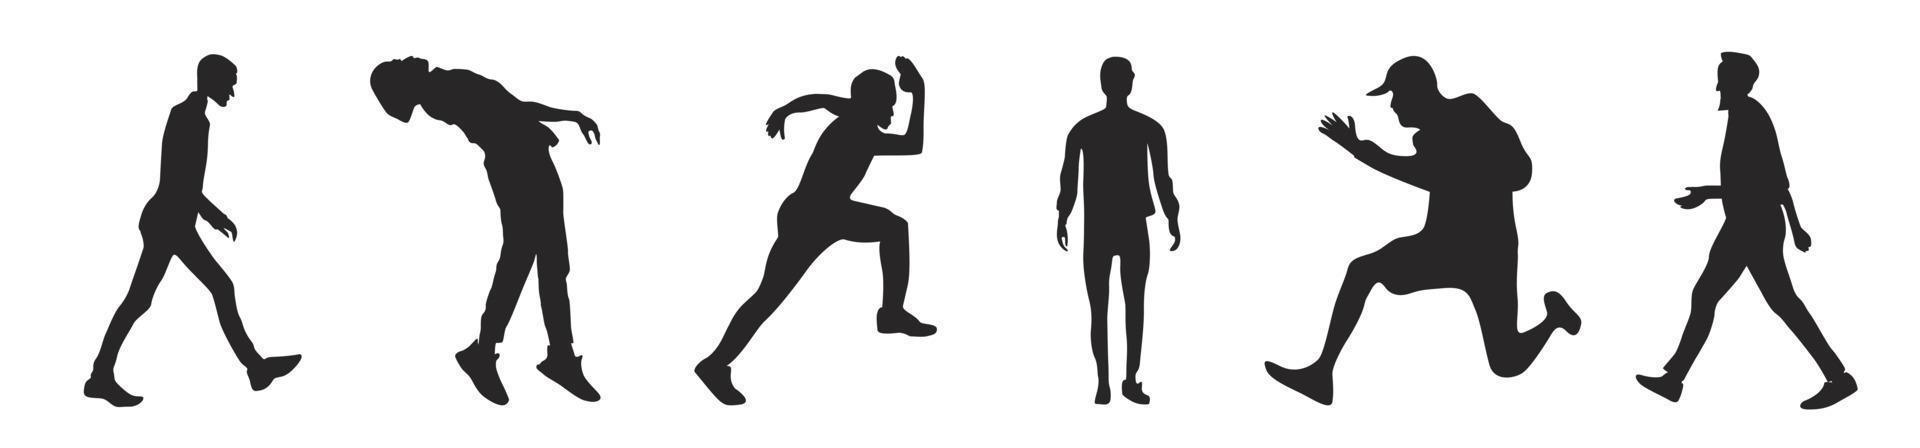 hombres vector siluetas de personas de pie, corriendo y caminando, color negro aislado en fondo blanco